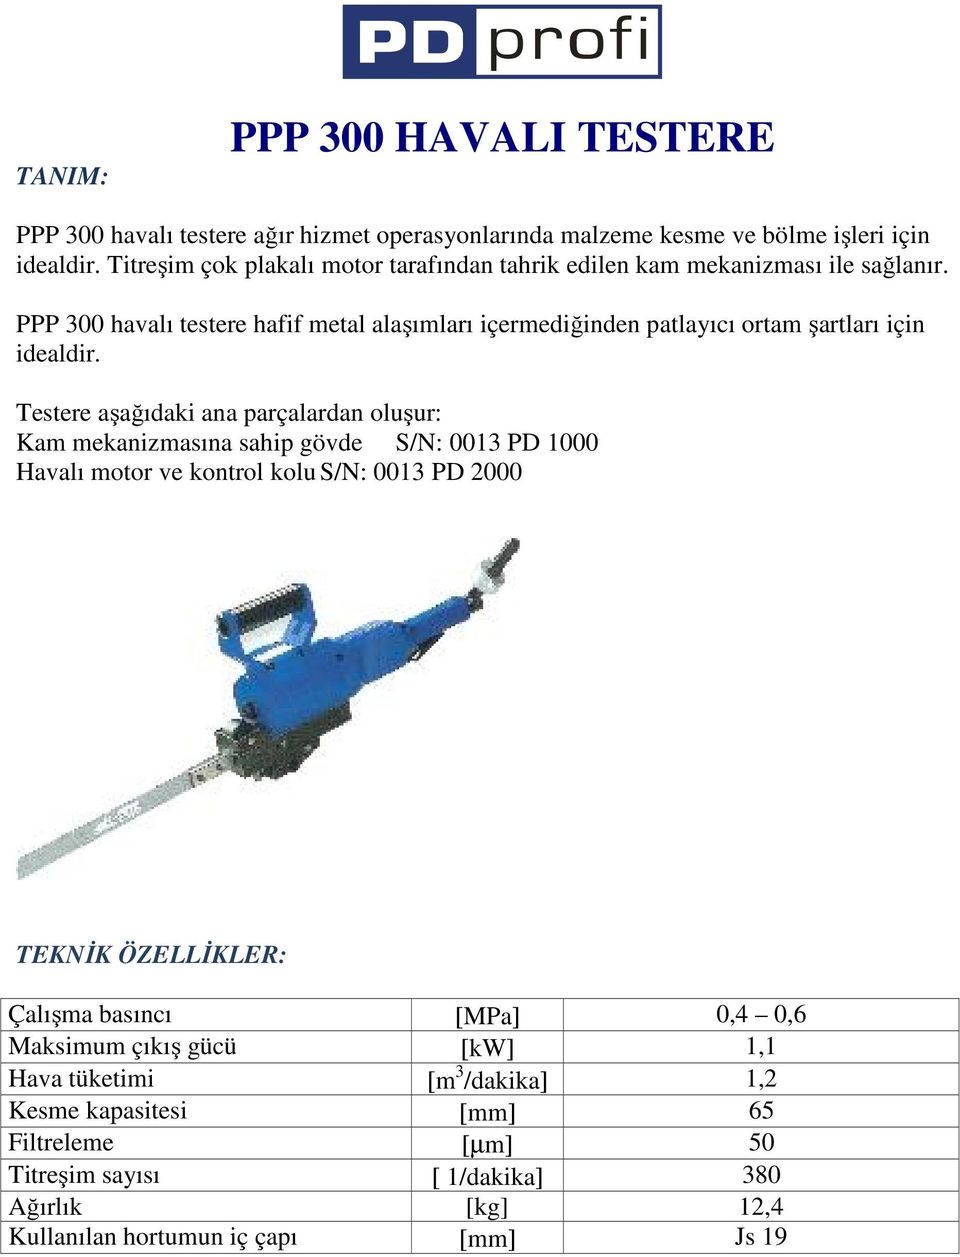 PPP 300 havalı testere hafif metal alaşımları içermediğinden patlayıcı ortam şartları için idealdir.